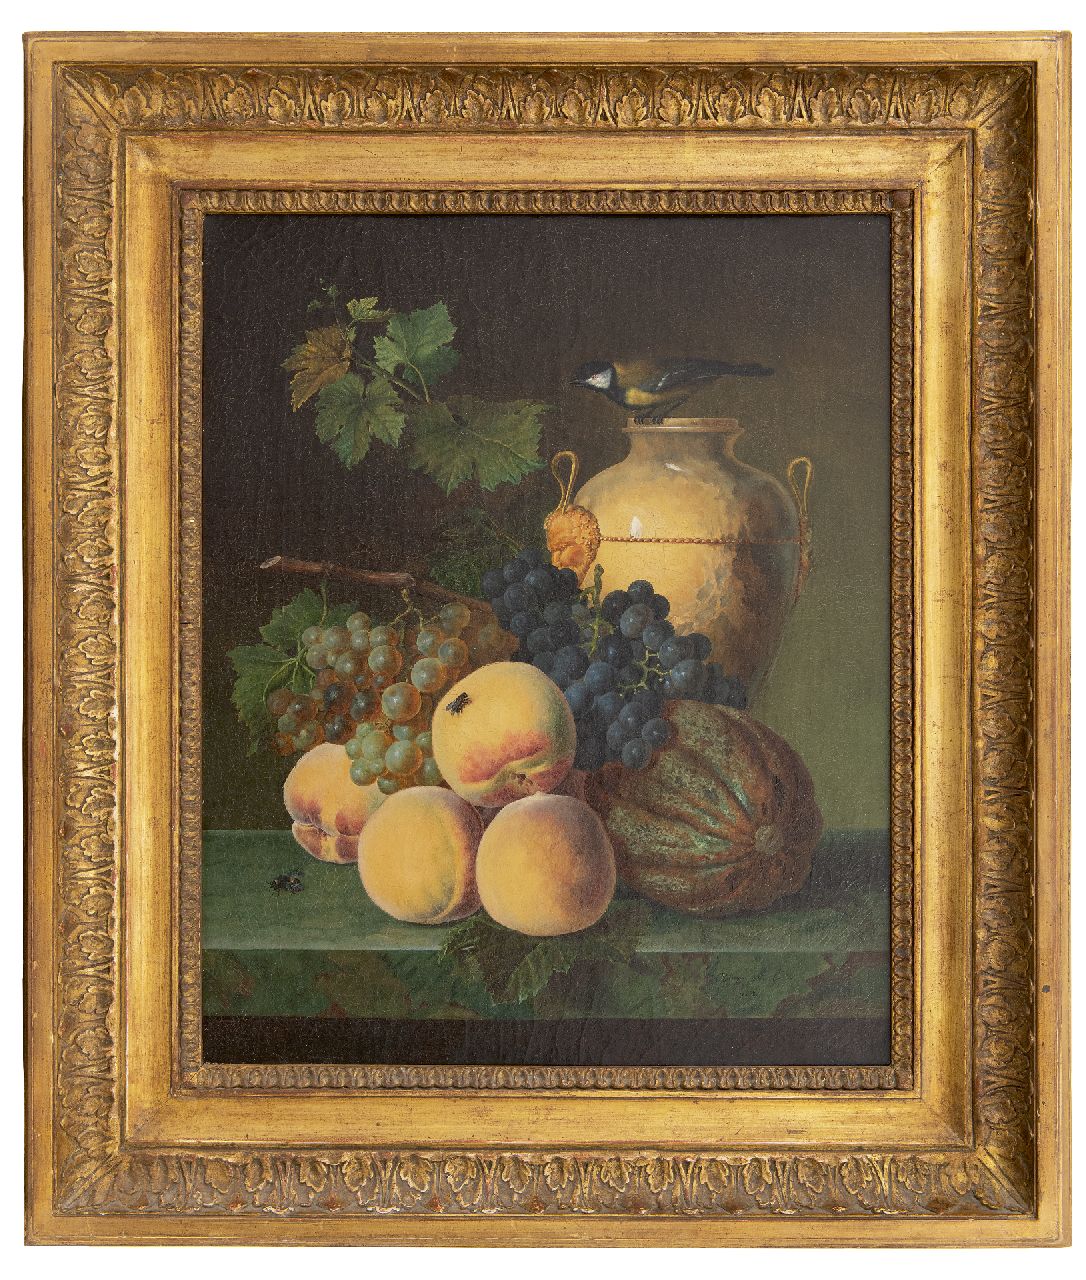 Génin O.M.  | Olympe Mouette Génin | Gemälde zum Verkauf angeboten | Stilleben mit Pfirsichen, Krug und Vögelchen, Öl auf Leinwand 49,0 x 39,9 cm, Unterzeichnet u.r. und datiert 1818